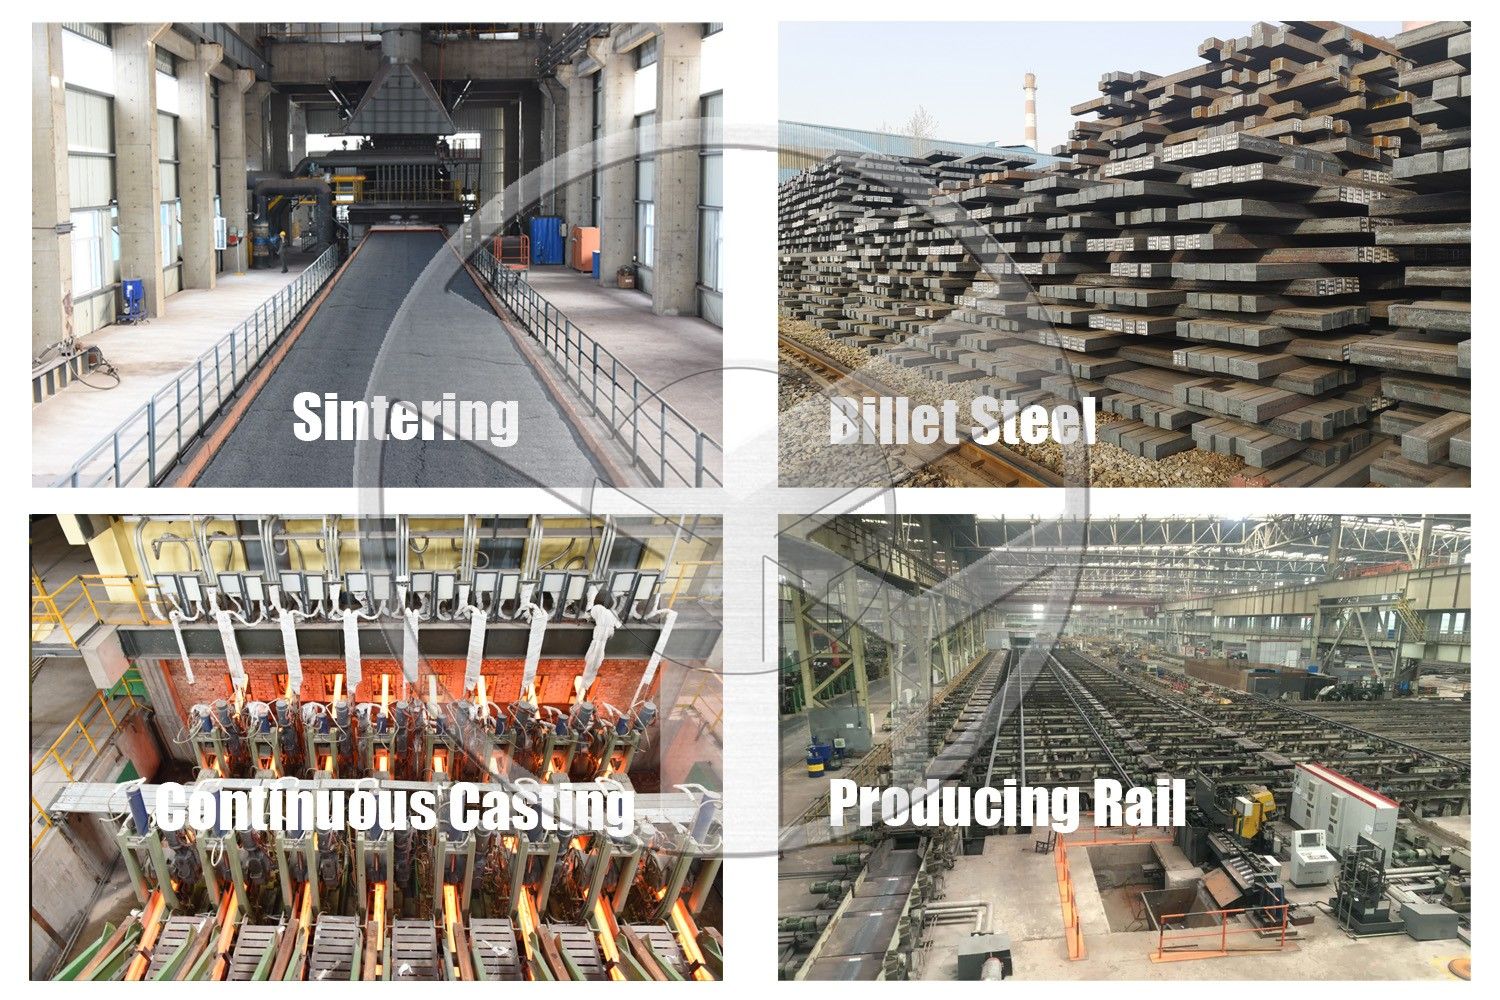 50Kg Heavy Steel Rail